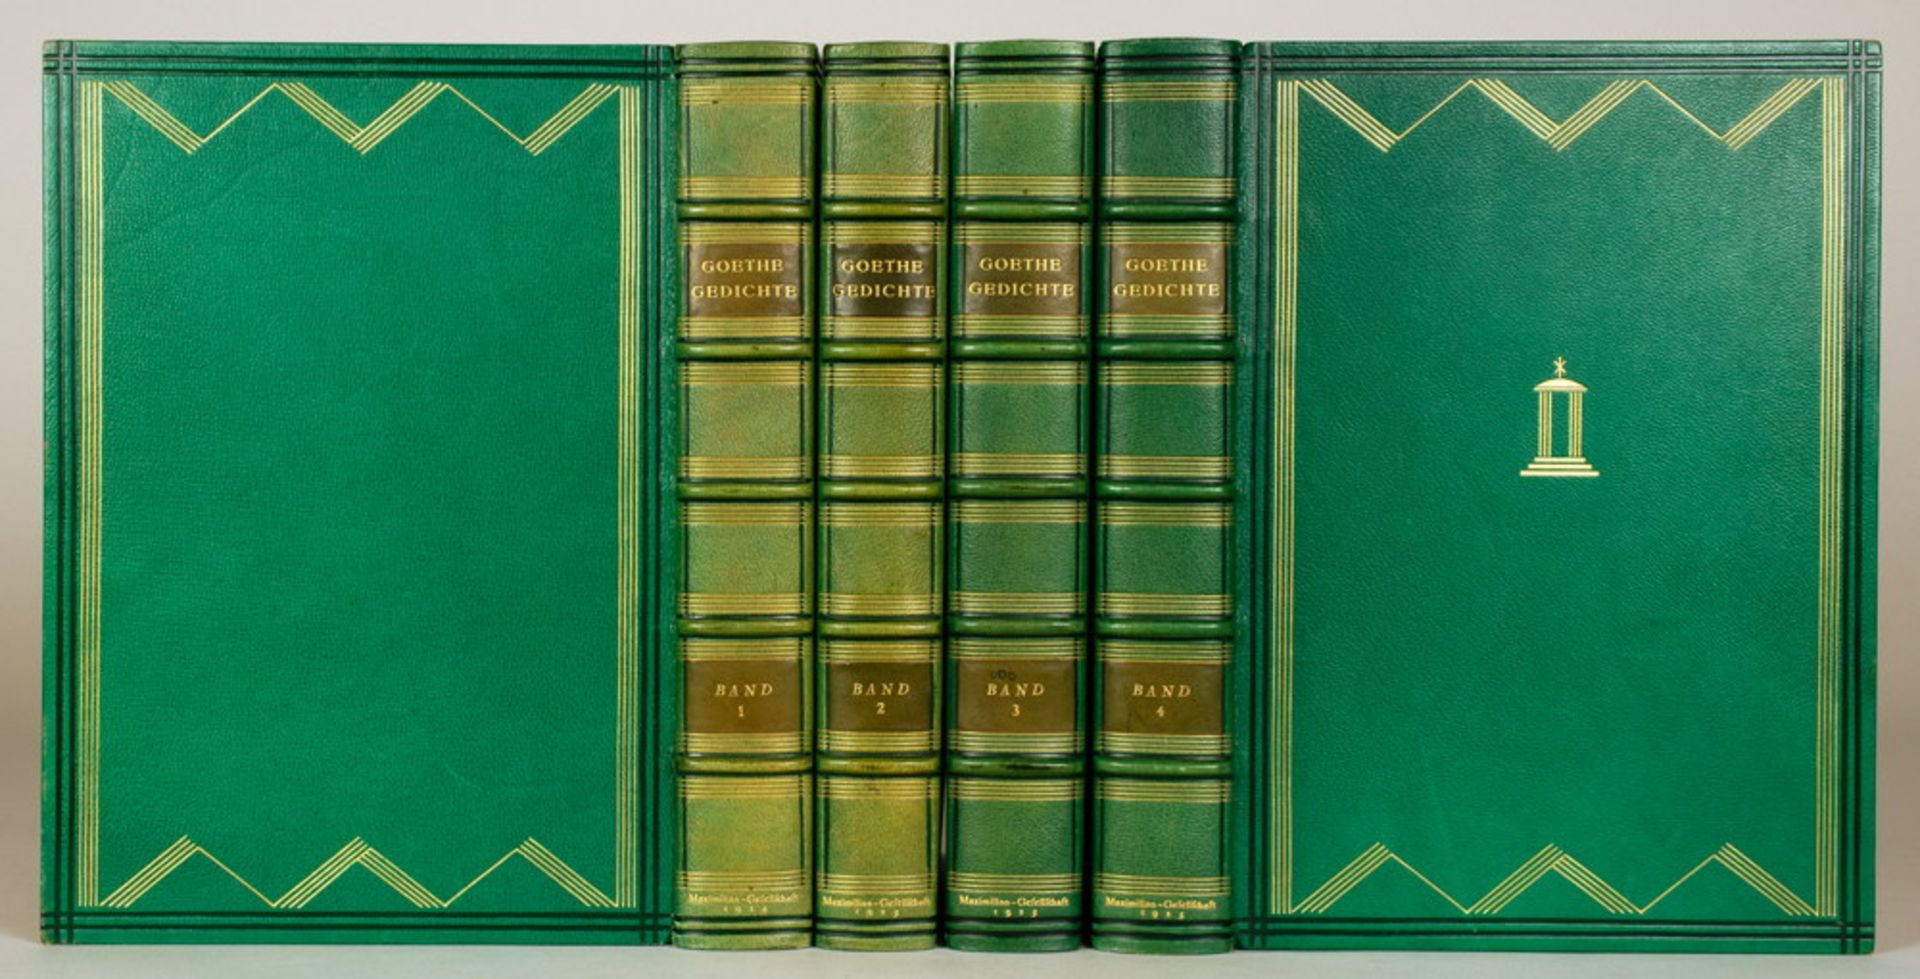 Einbände - Leuchtend grüne Saffianlederbände mit ornamentaler Vergoldung und Blindprägung, signiert 